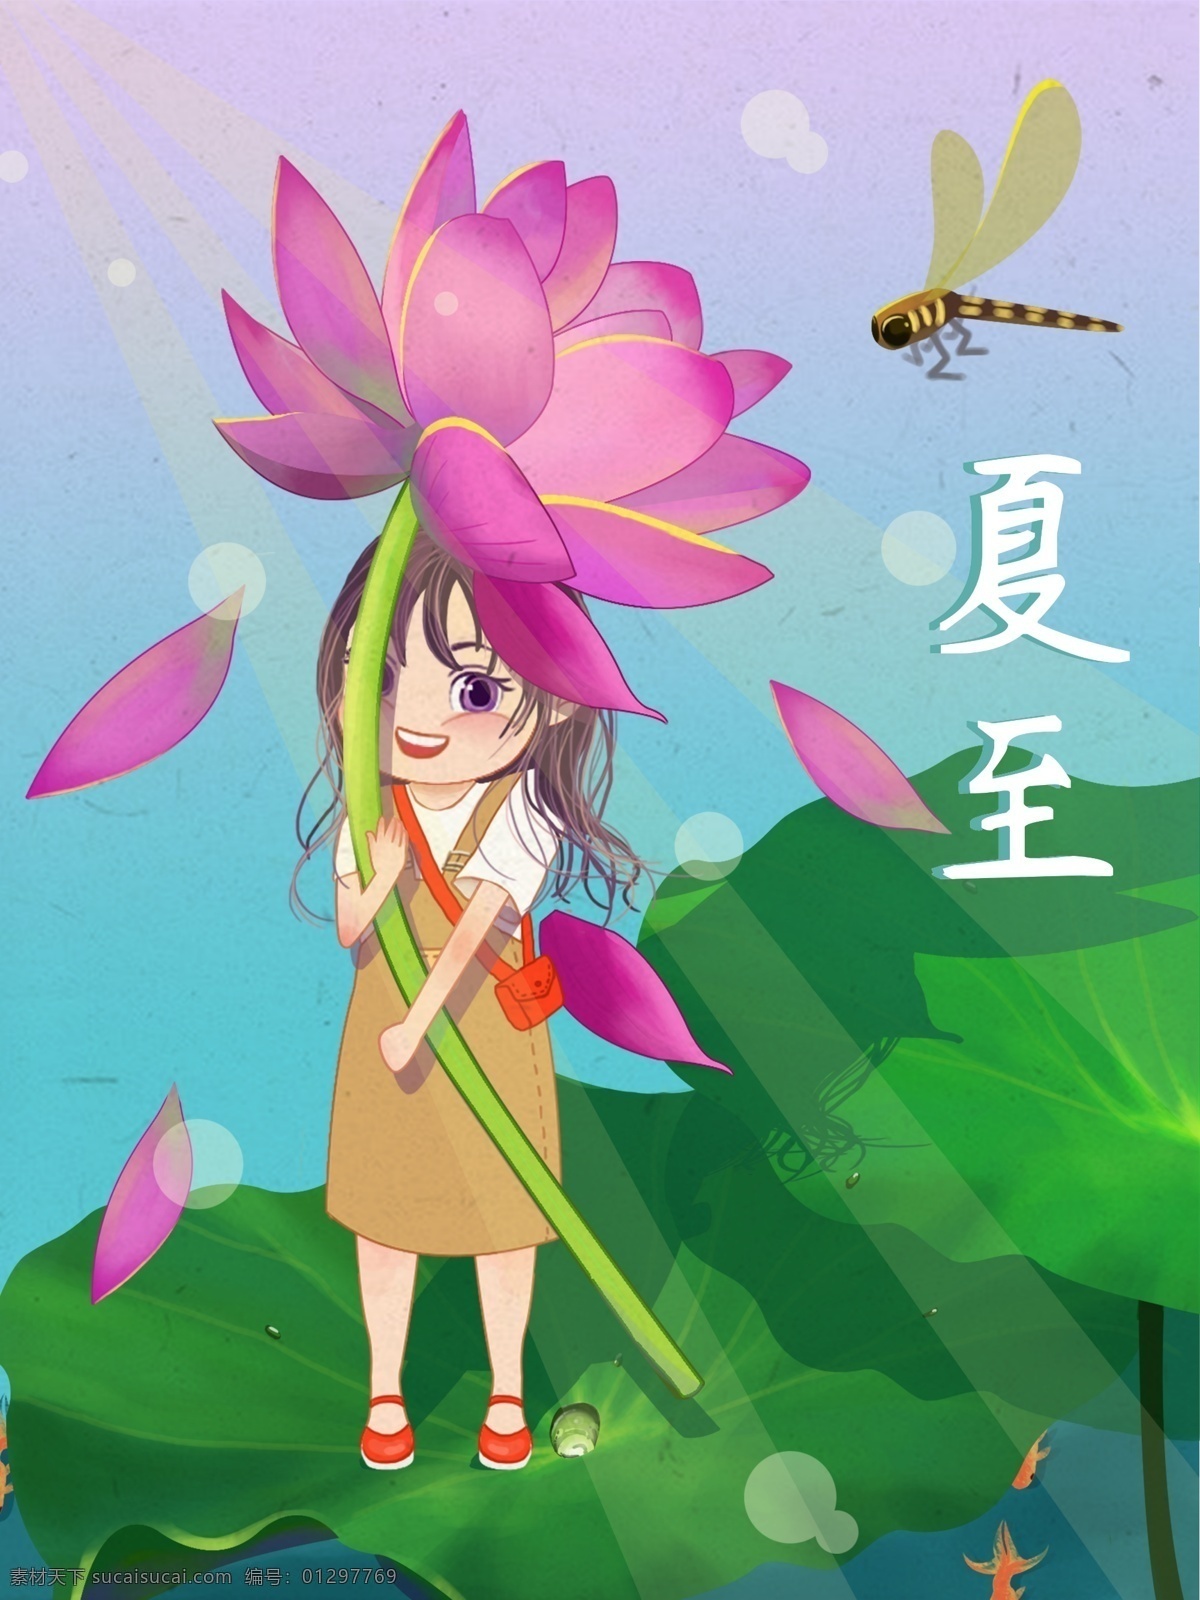 夏至 日 节气 女孩 卡通 插画 节日 荷花 夏天 蜻蜓